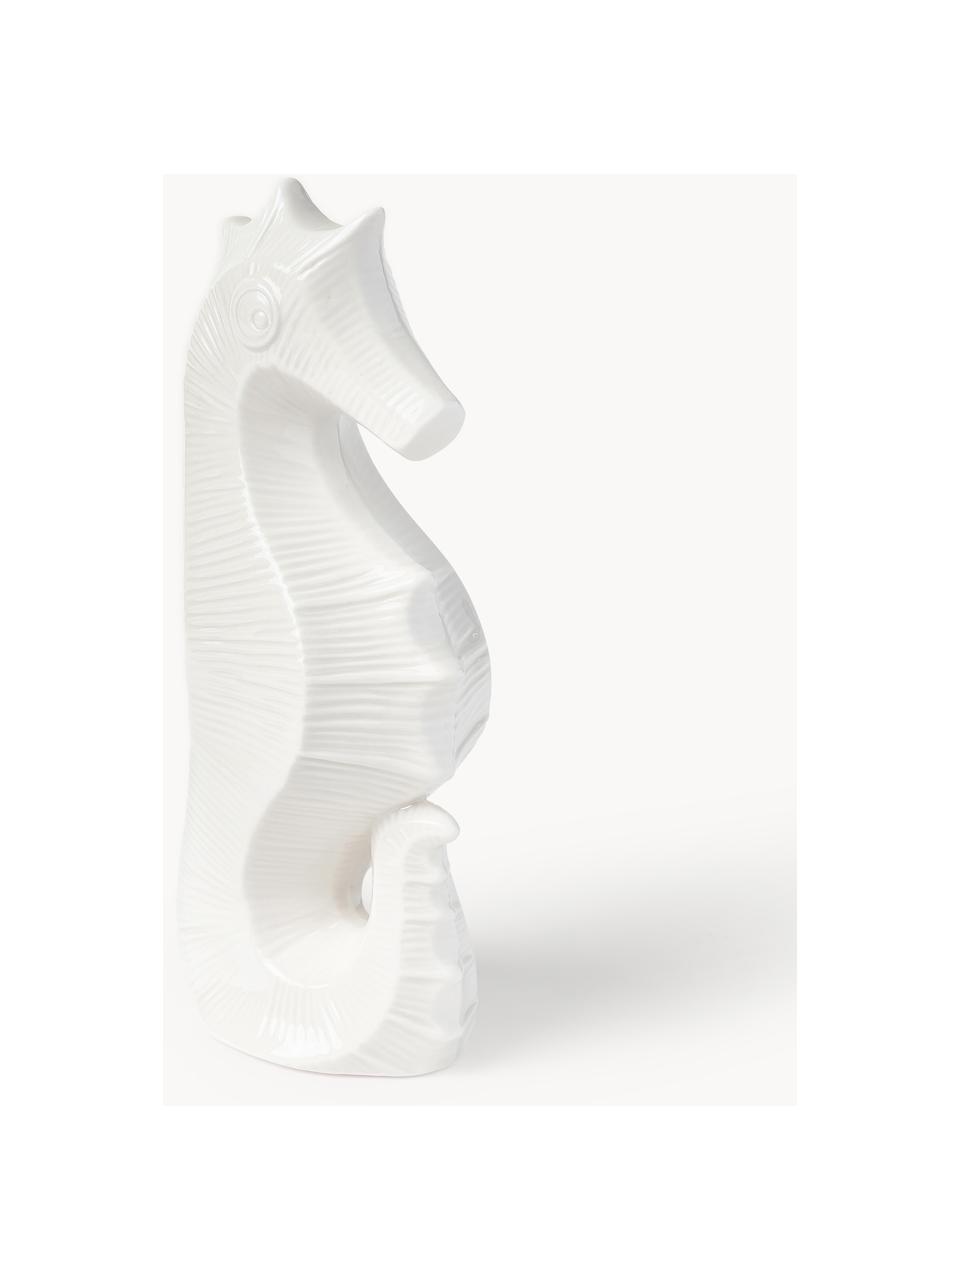 Porzellan-Deko-Objekt Favignana, Porzellan, Off White, B 13 x H 27 cm